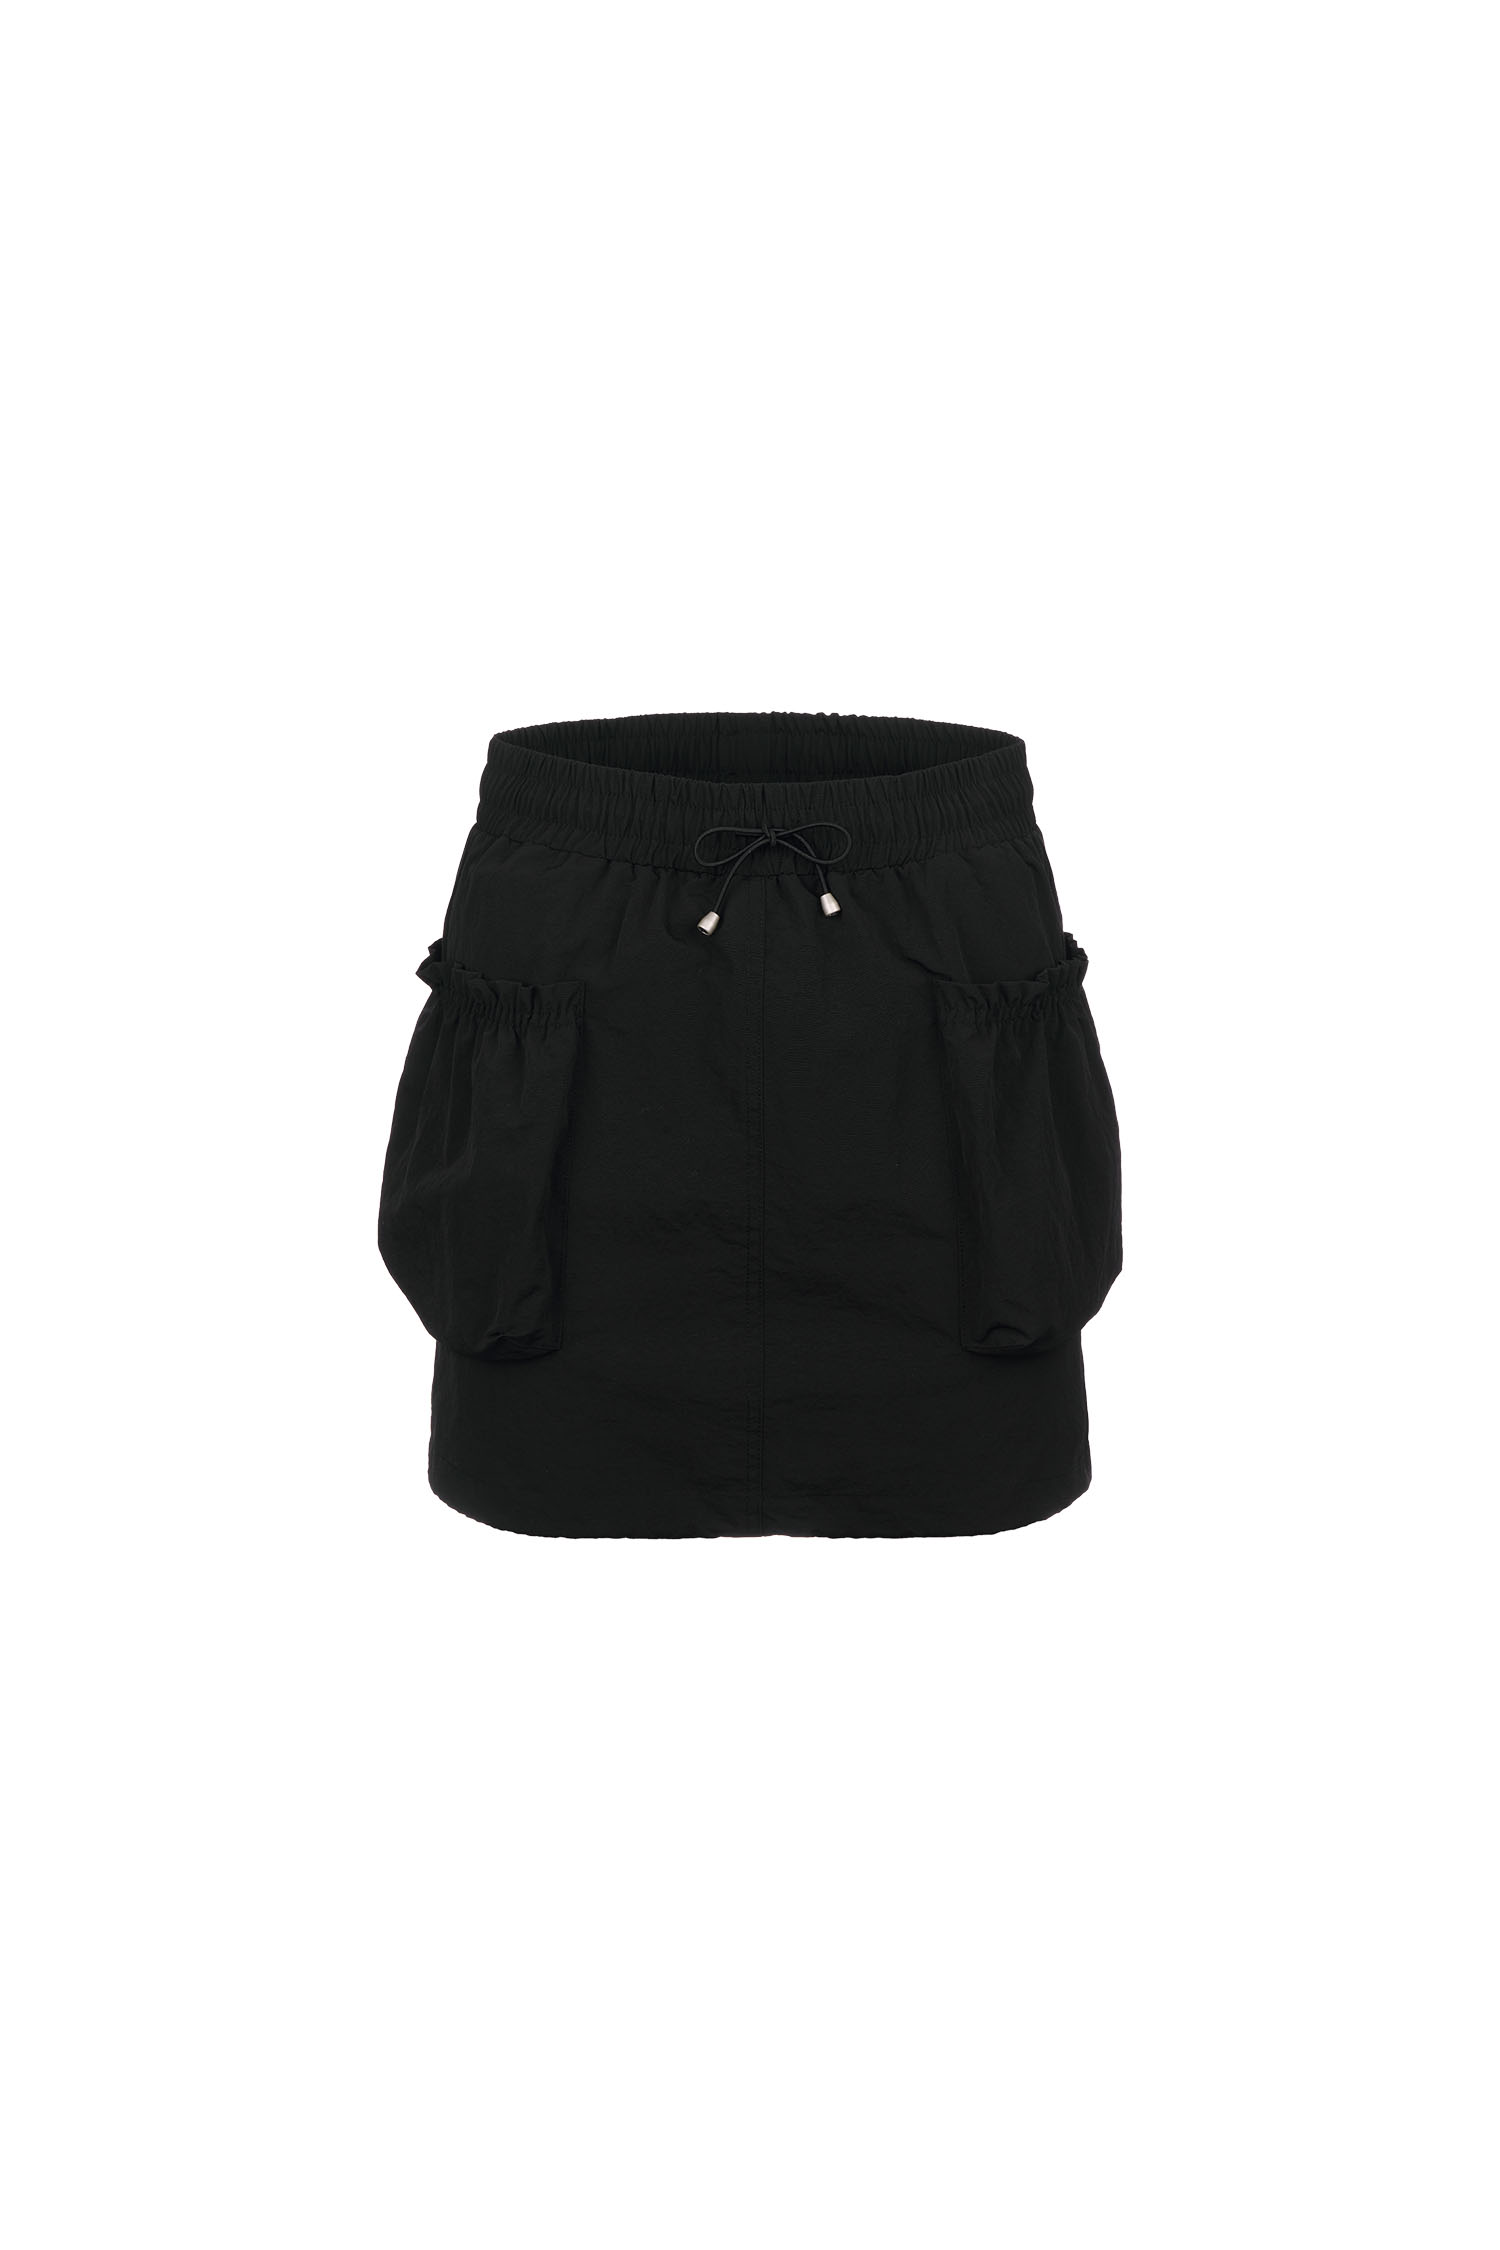 WOMAN スモーキング カーゴ ミニ スカート [BLACK]